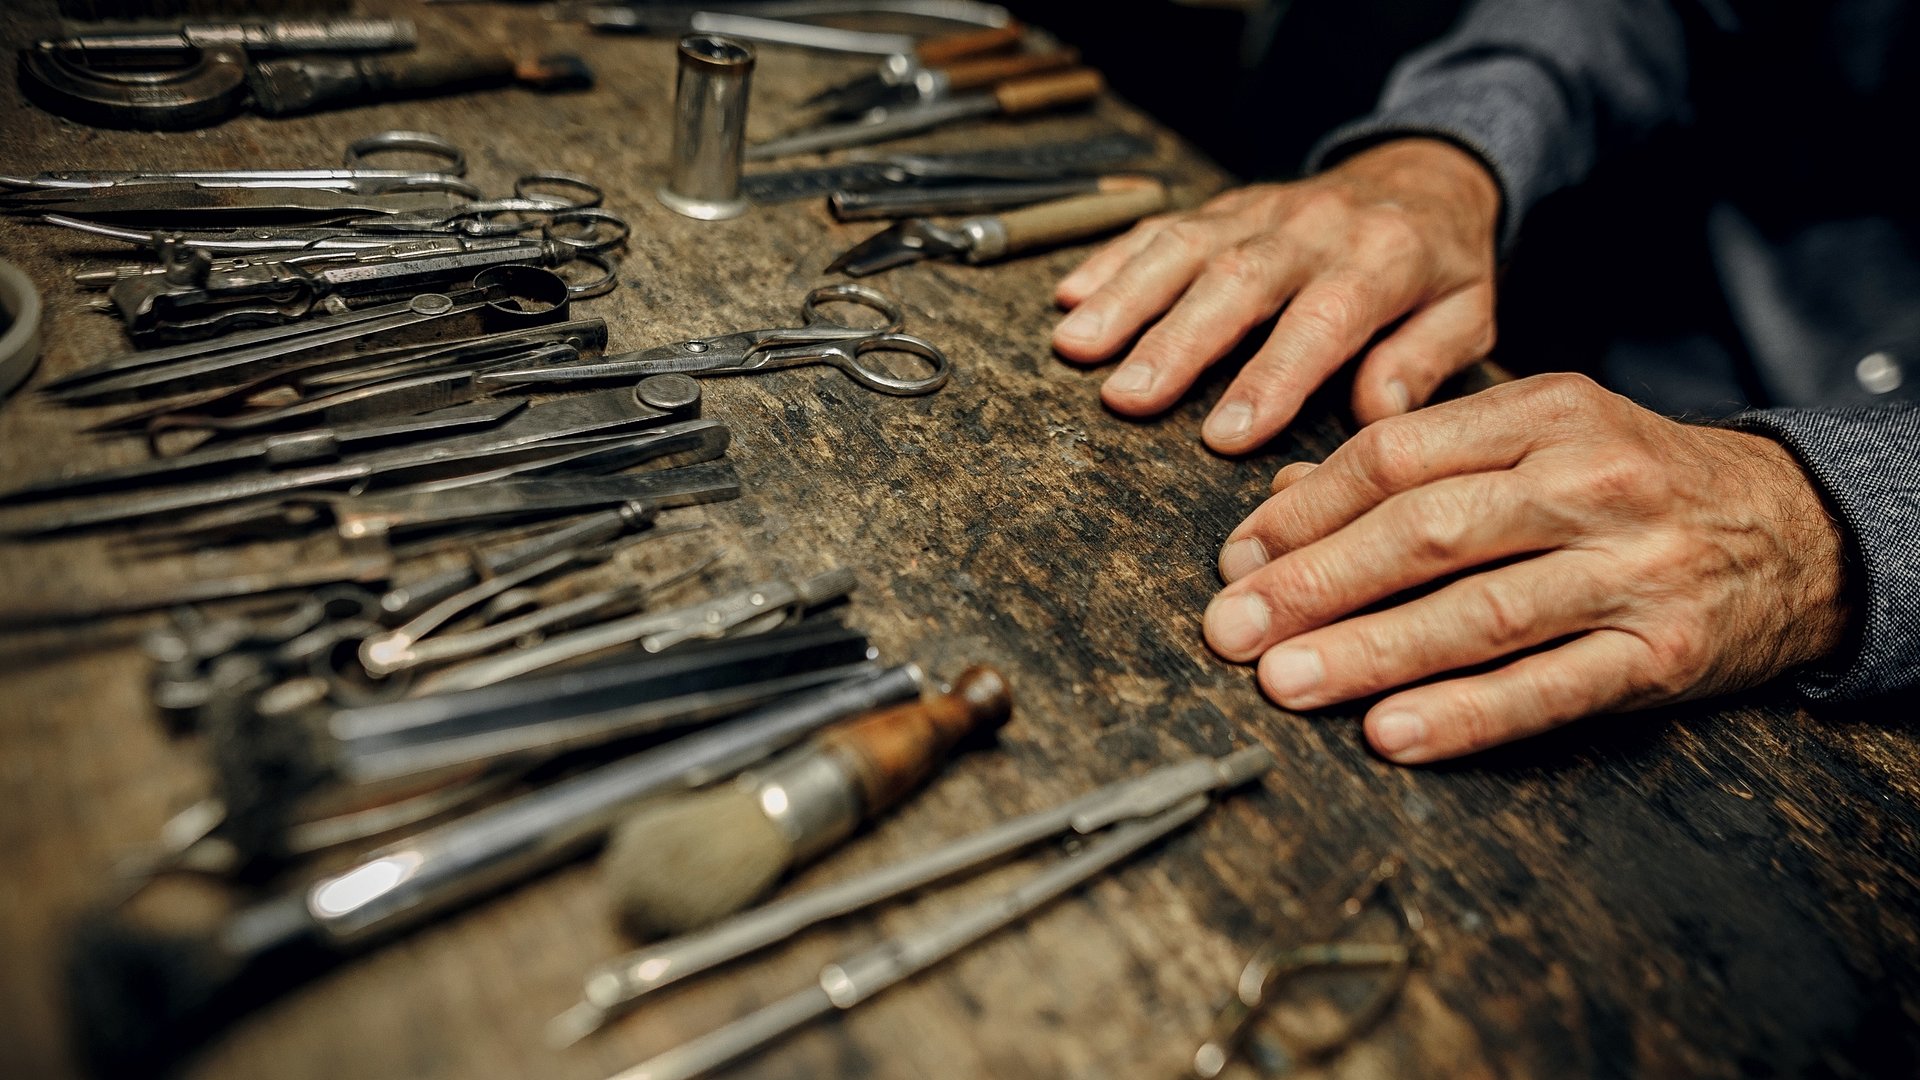 Hands Tools Wood Crafting Tables Scissors 1920x1080